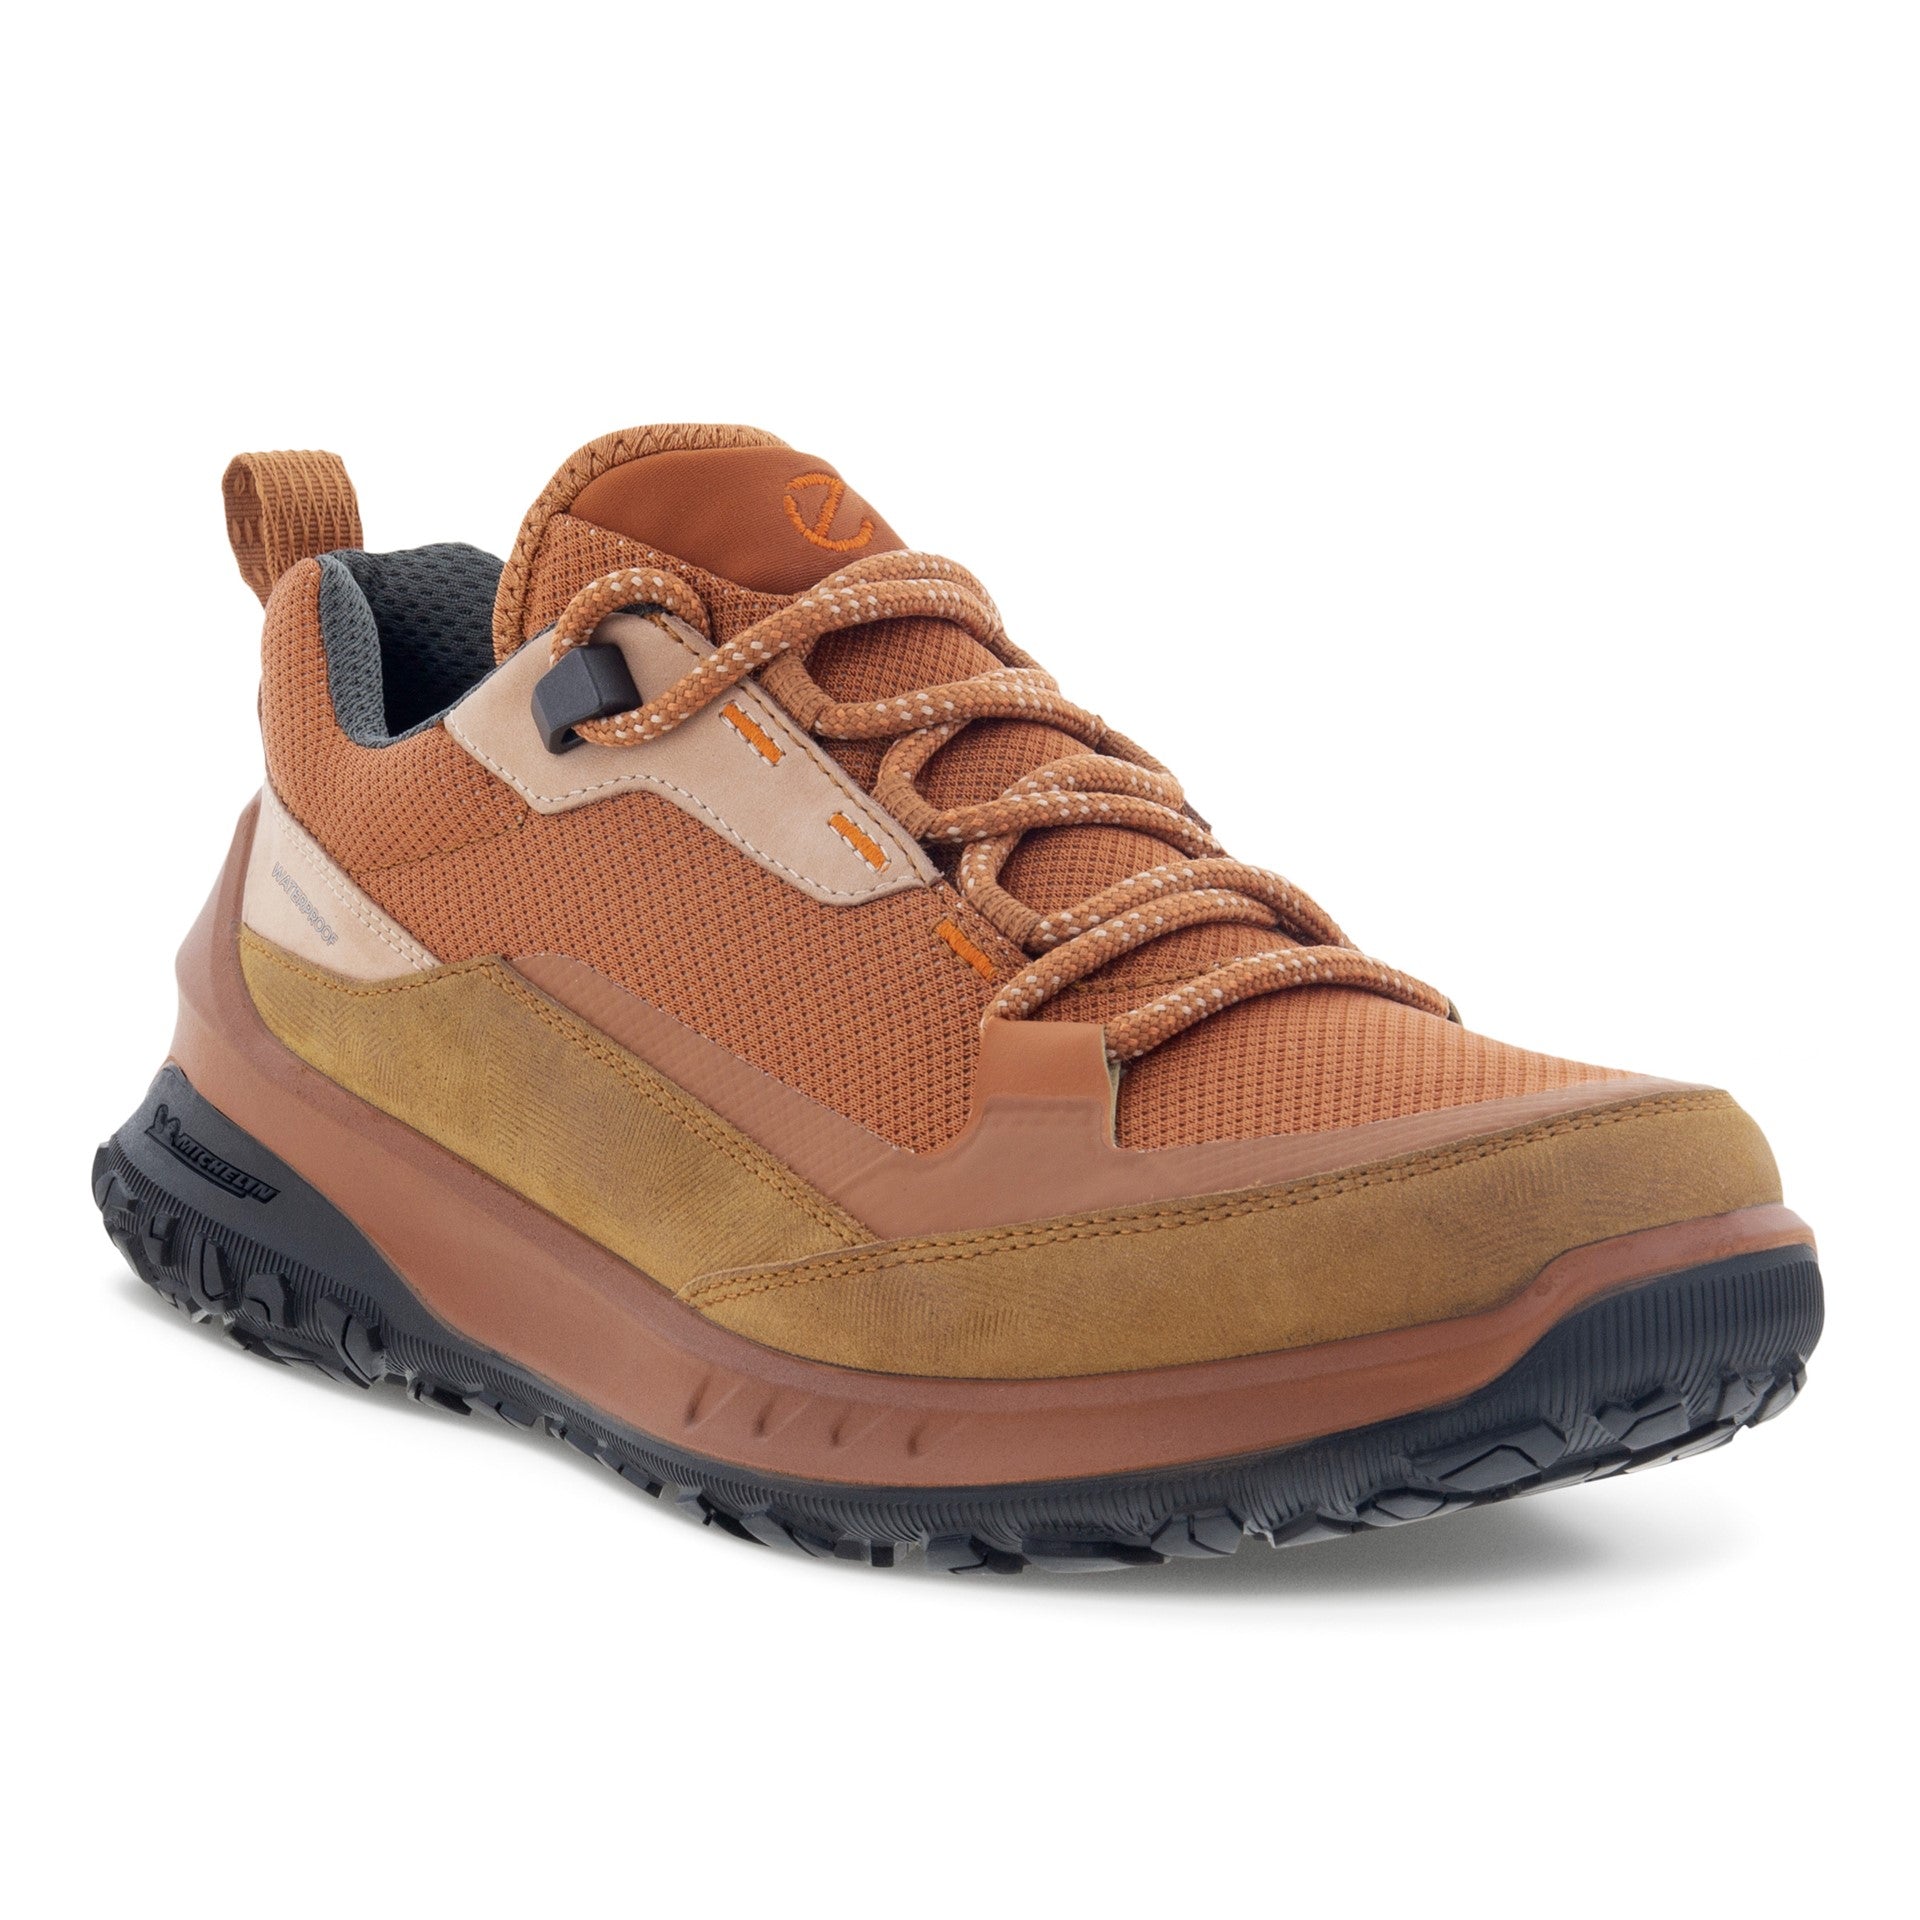 ULT-TRN Low Waterproof Shoe (Women) - ECCO